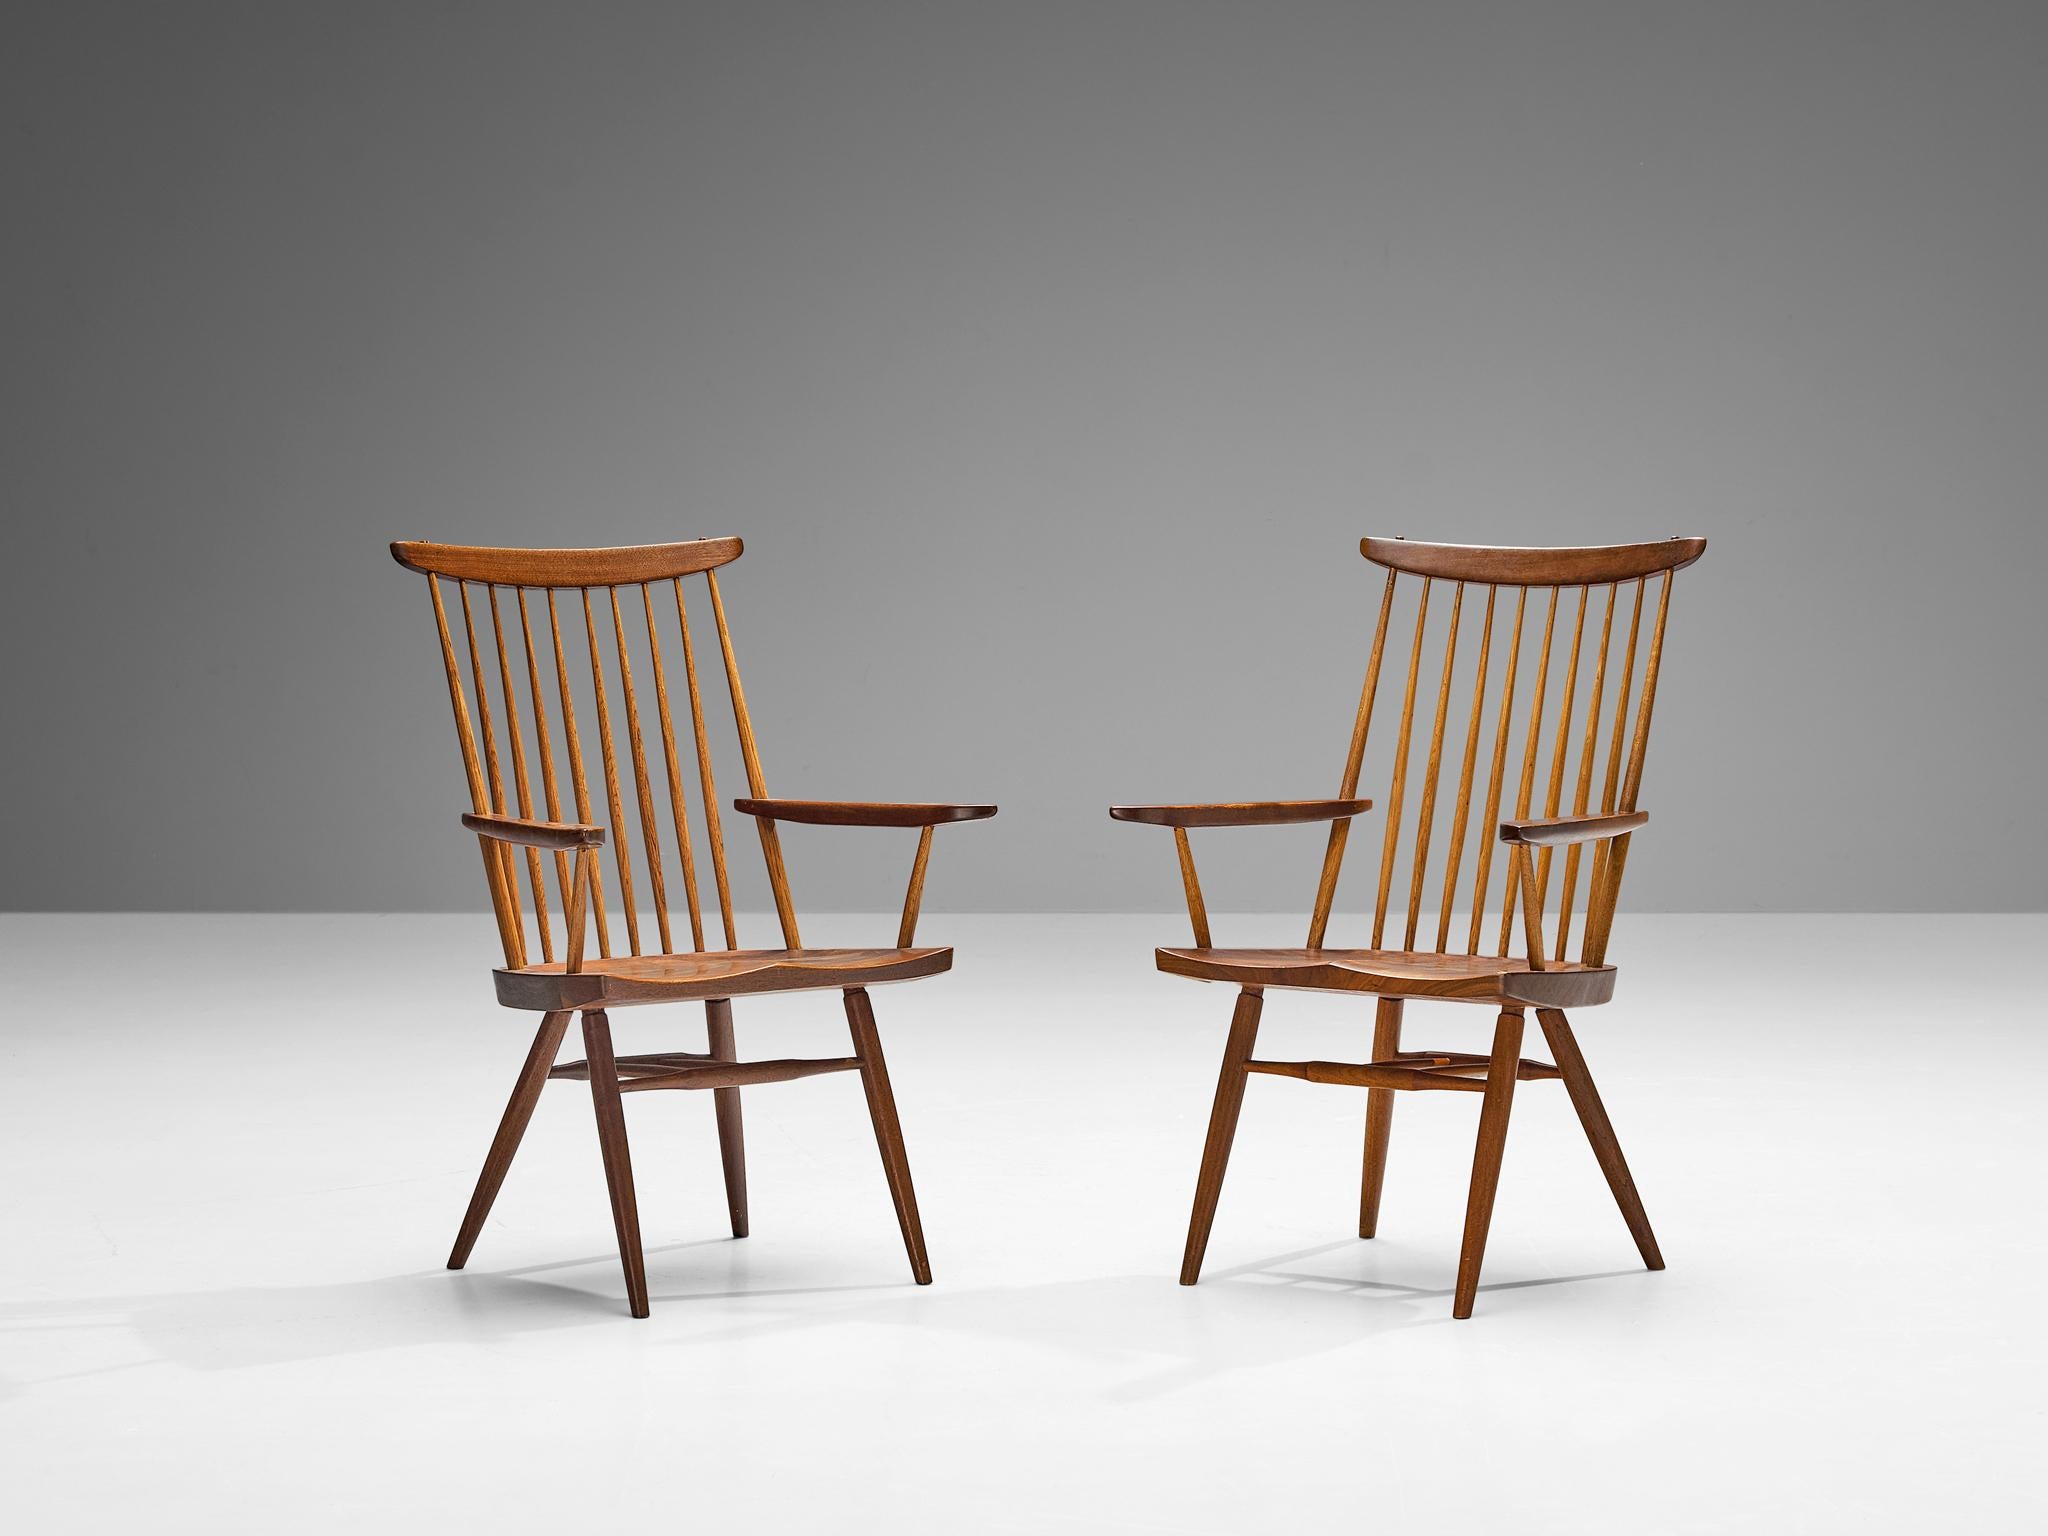 George Nakashima für Nakashima Studio, &New' Sessel, Nussbaum, Hickoryholz, Vereinigte Staaten, 1960 

In Bezug auf seine wesentliche Form, die Verwendung von MATERIAL und die Holzverarbeitung ist dieser 